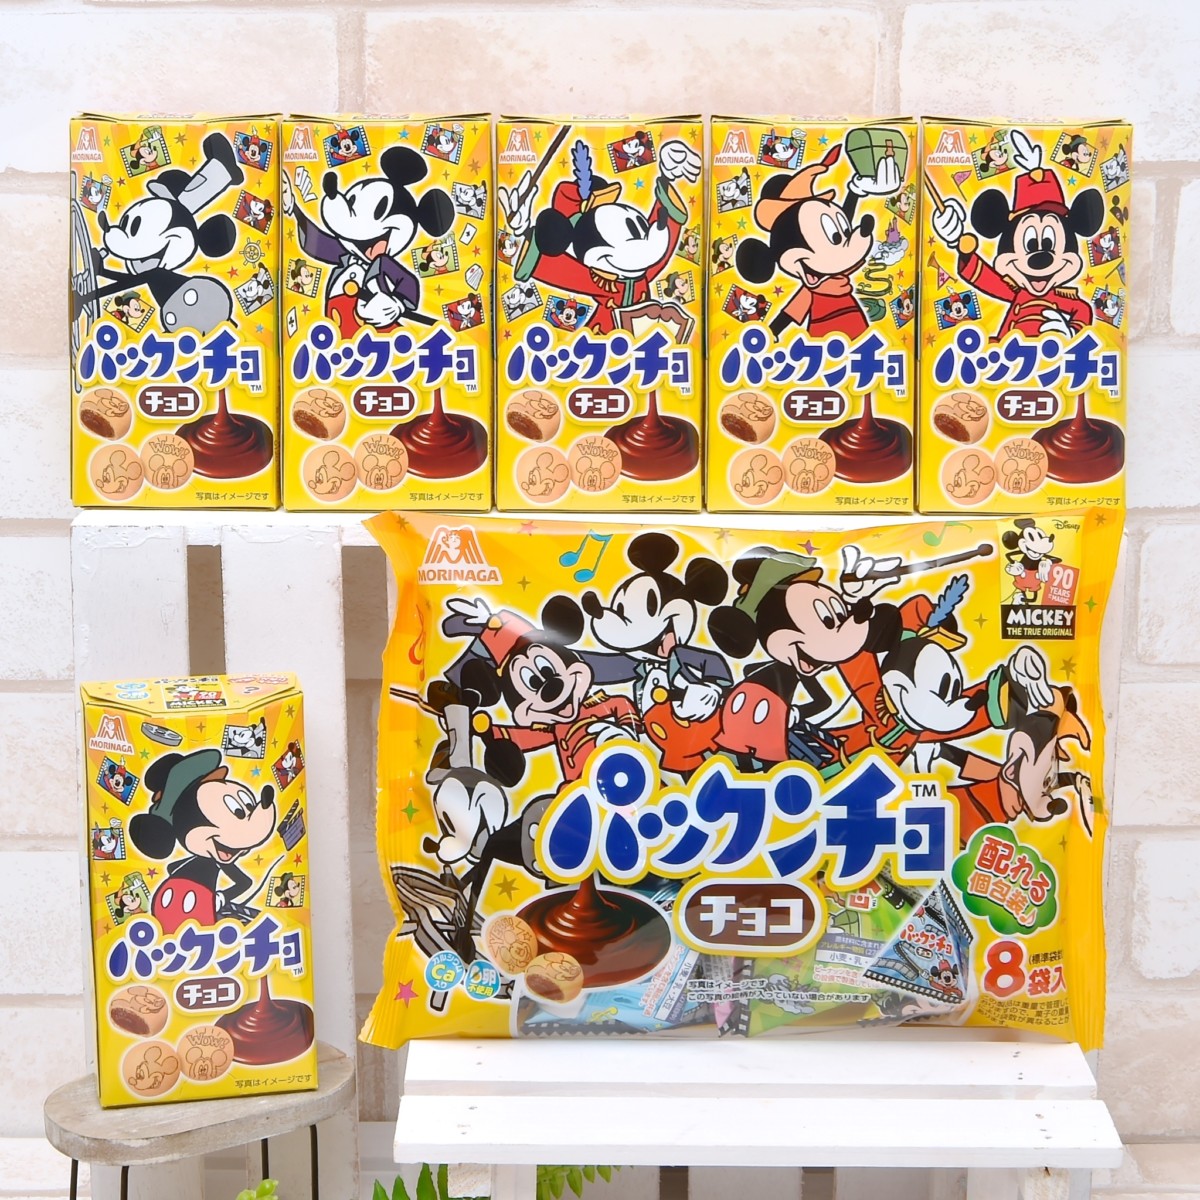 歴代ミッキーデザイン 森永製菓 パックンチョ ミッキーマウス90周年 パッケージ